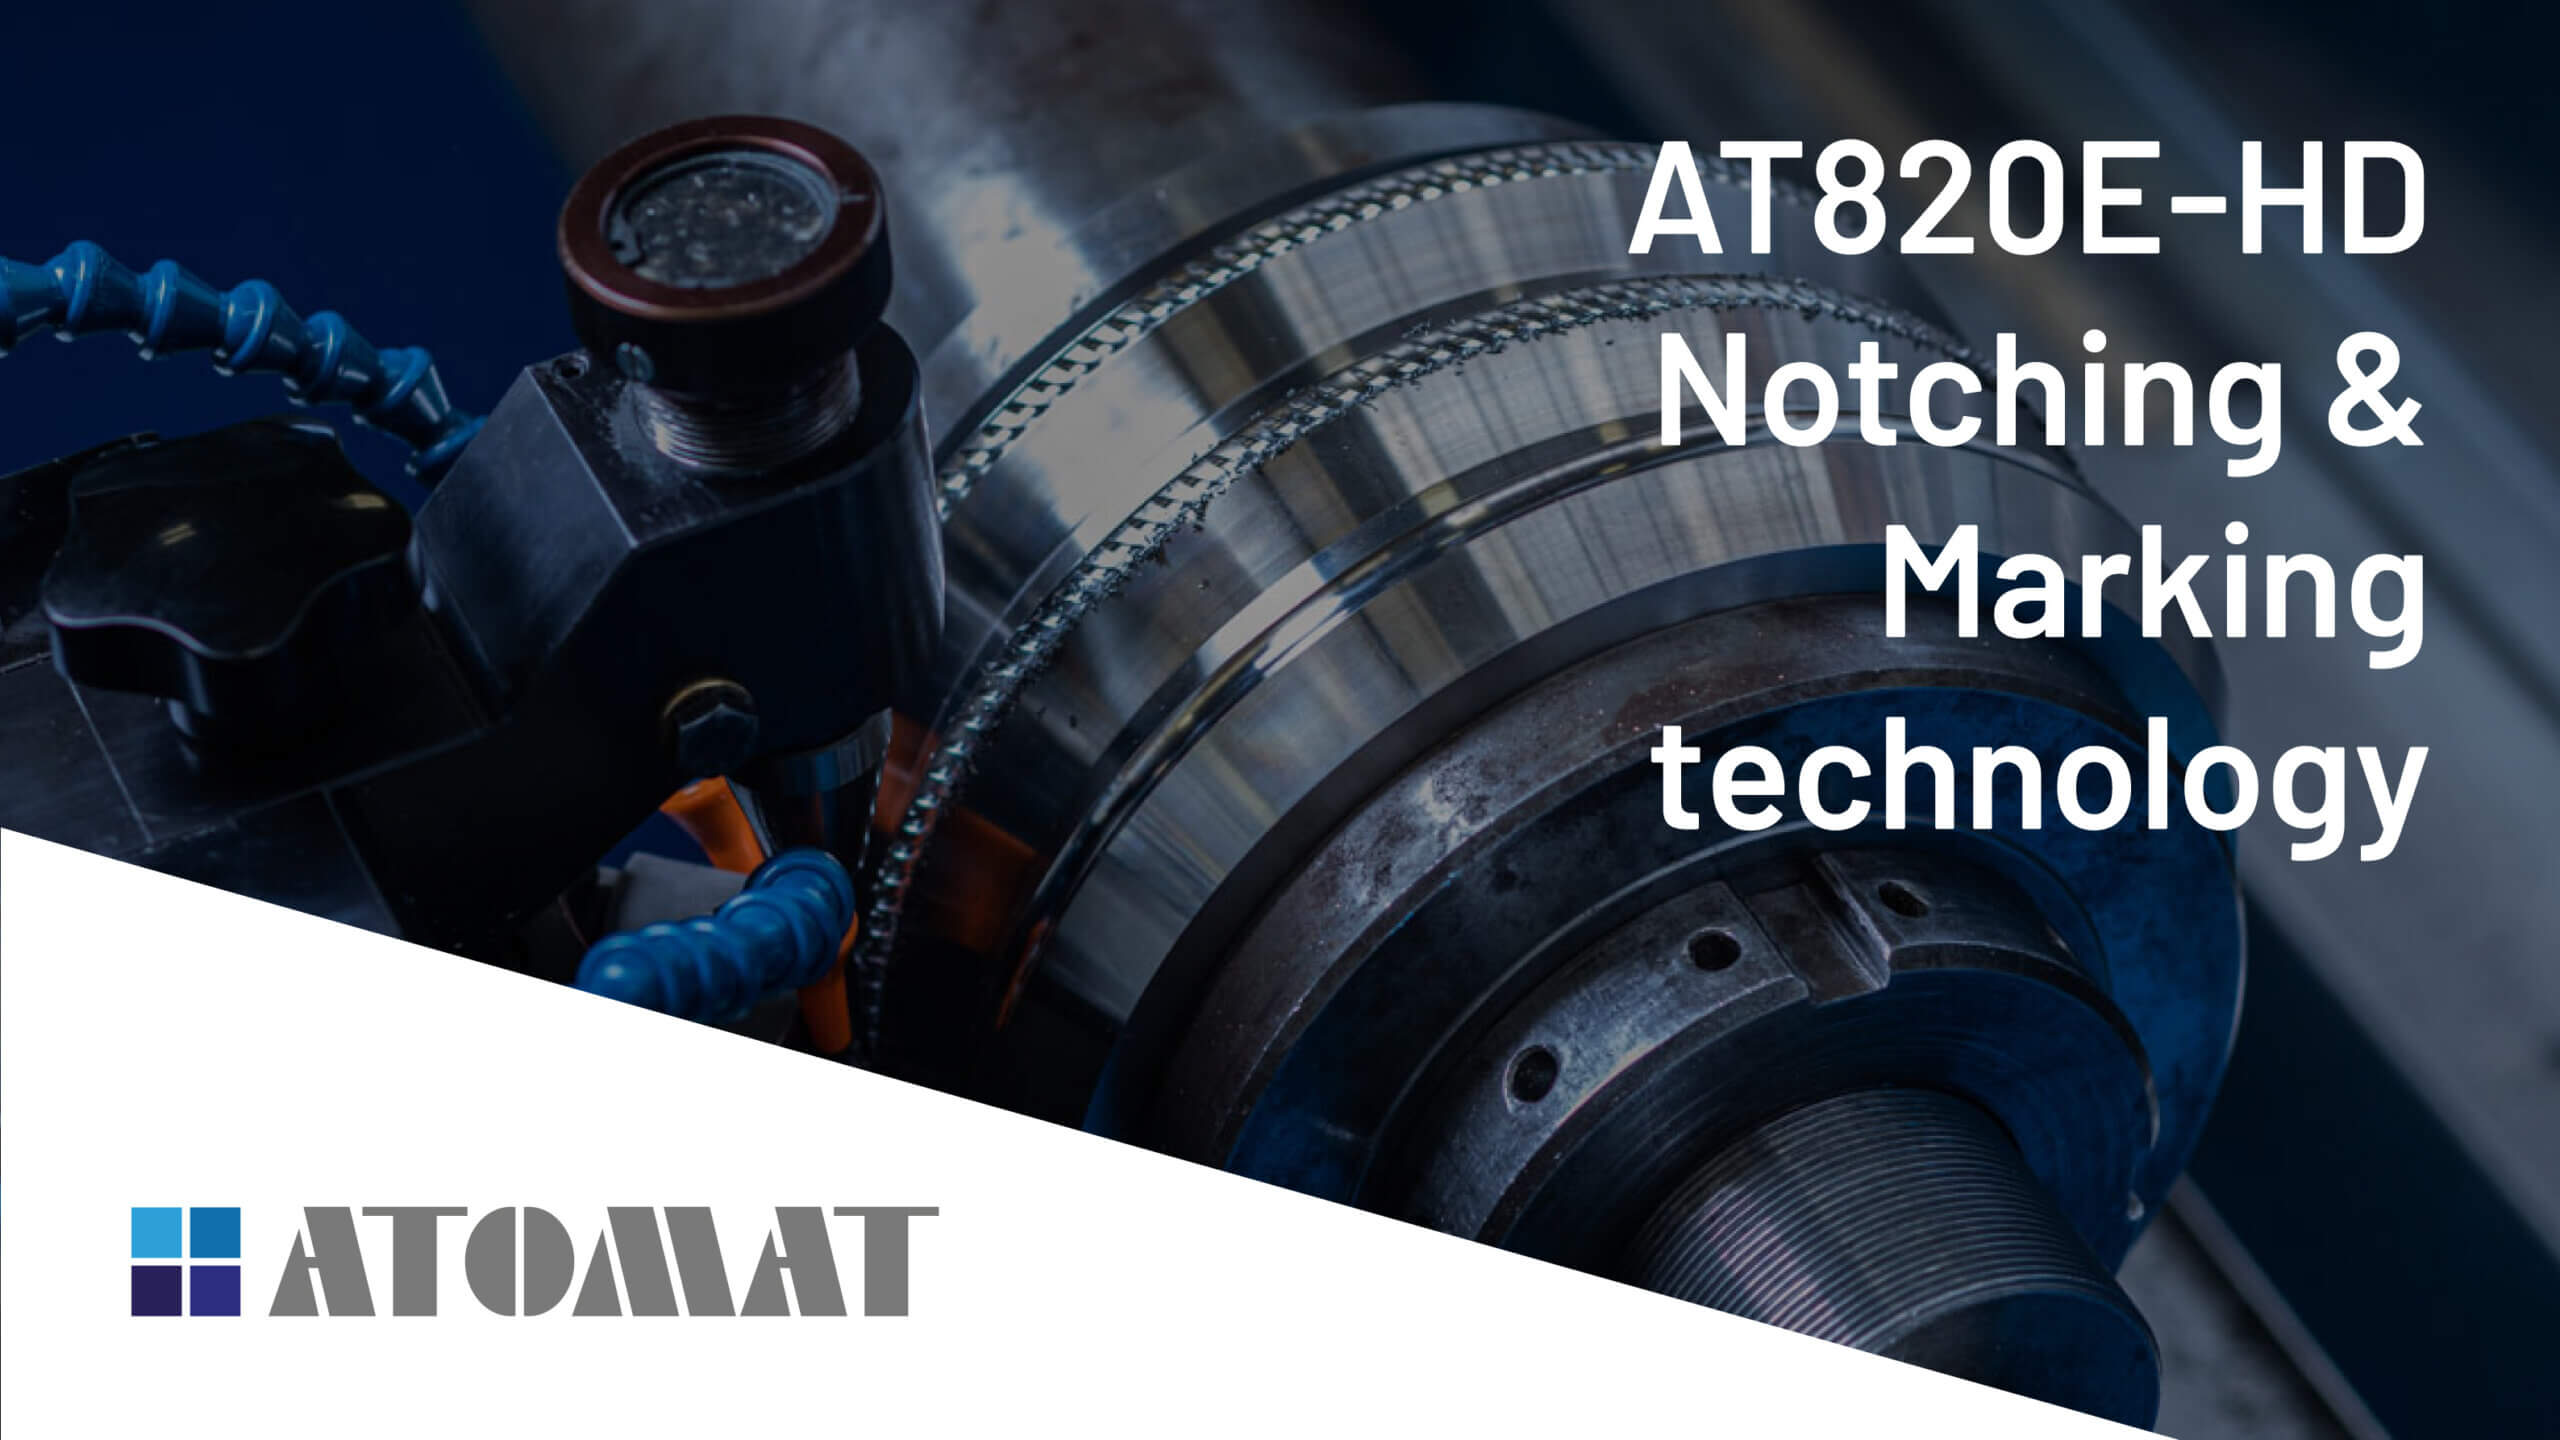 AT820E-HD and Atomat notching & marking technology